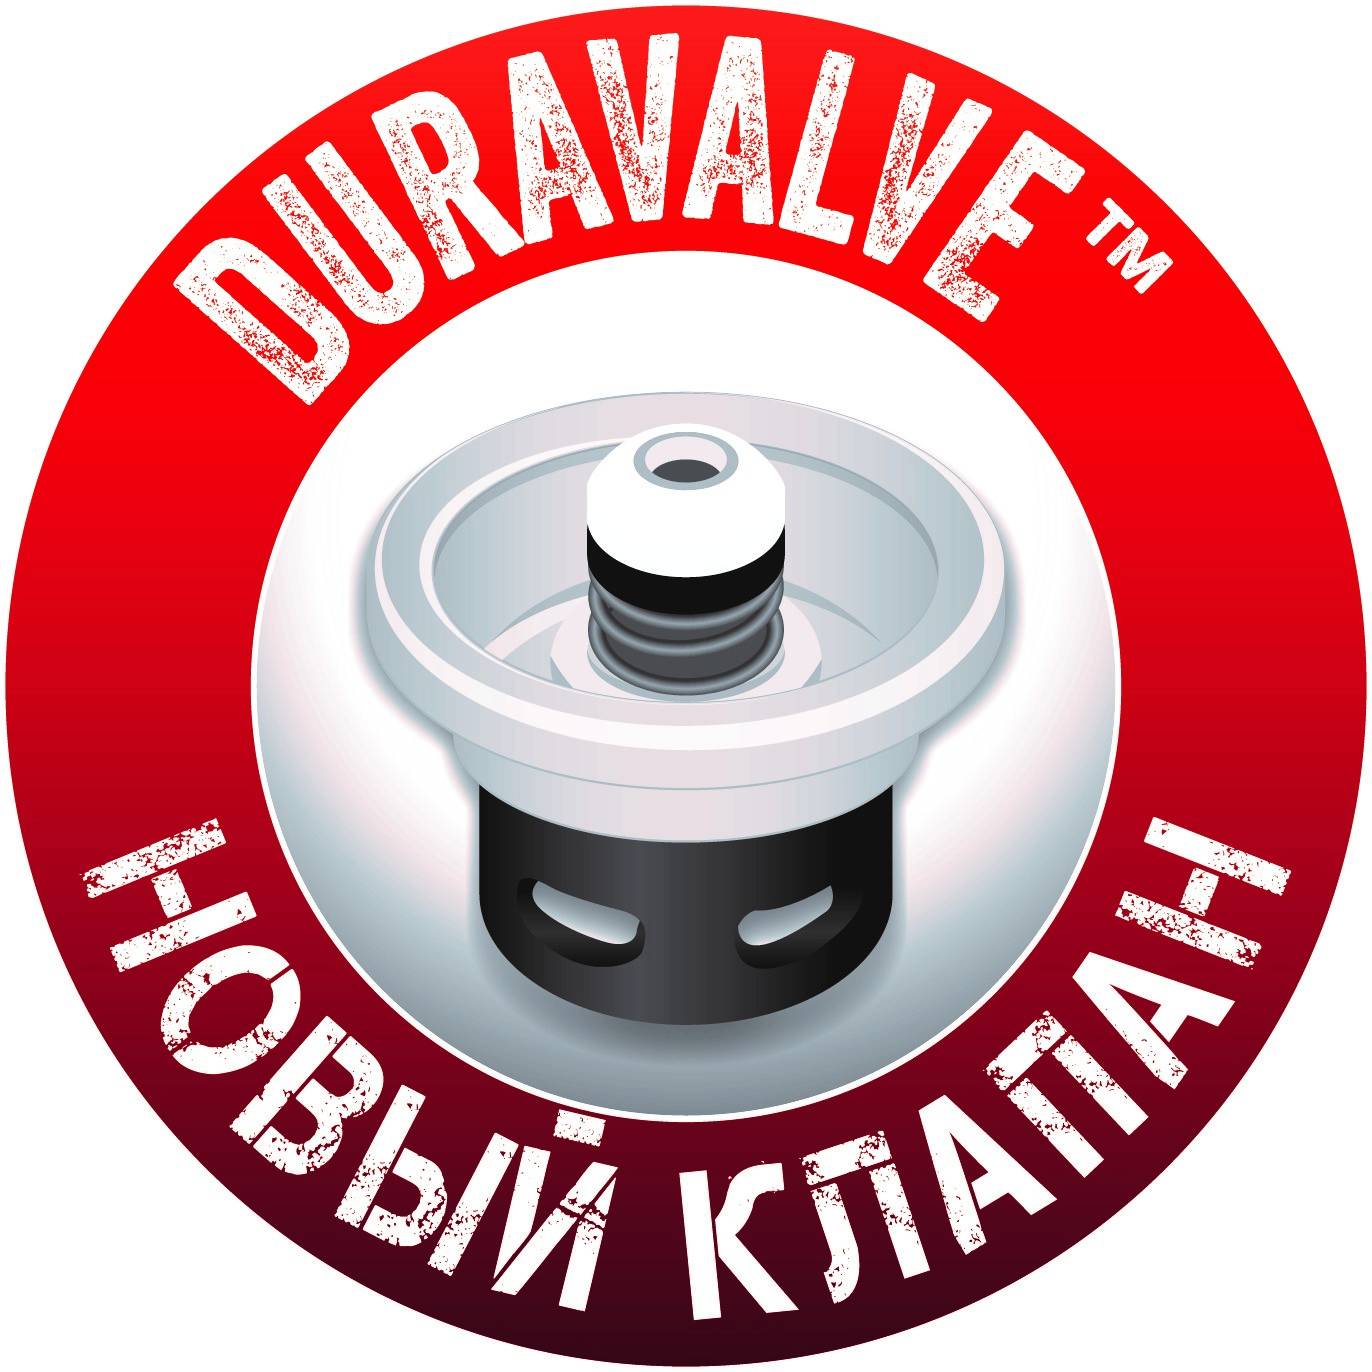 Новинка Soudal: клапан  Duravalve – максимум пользы 